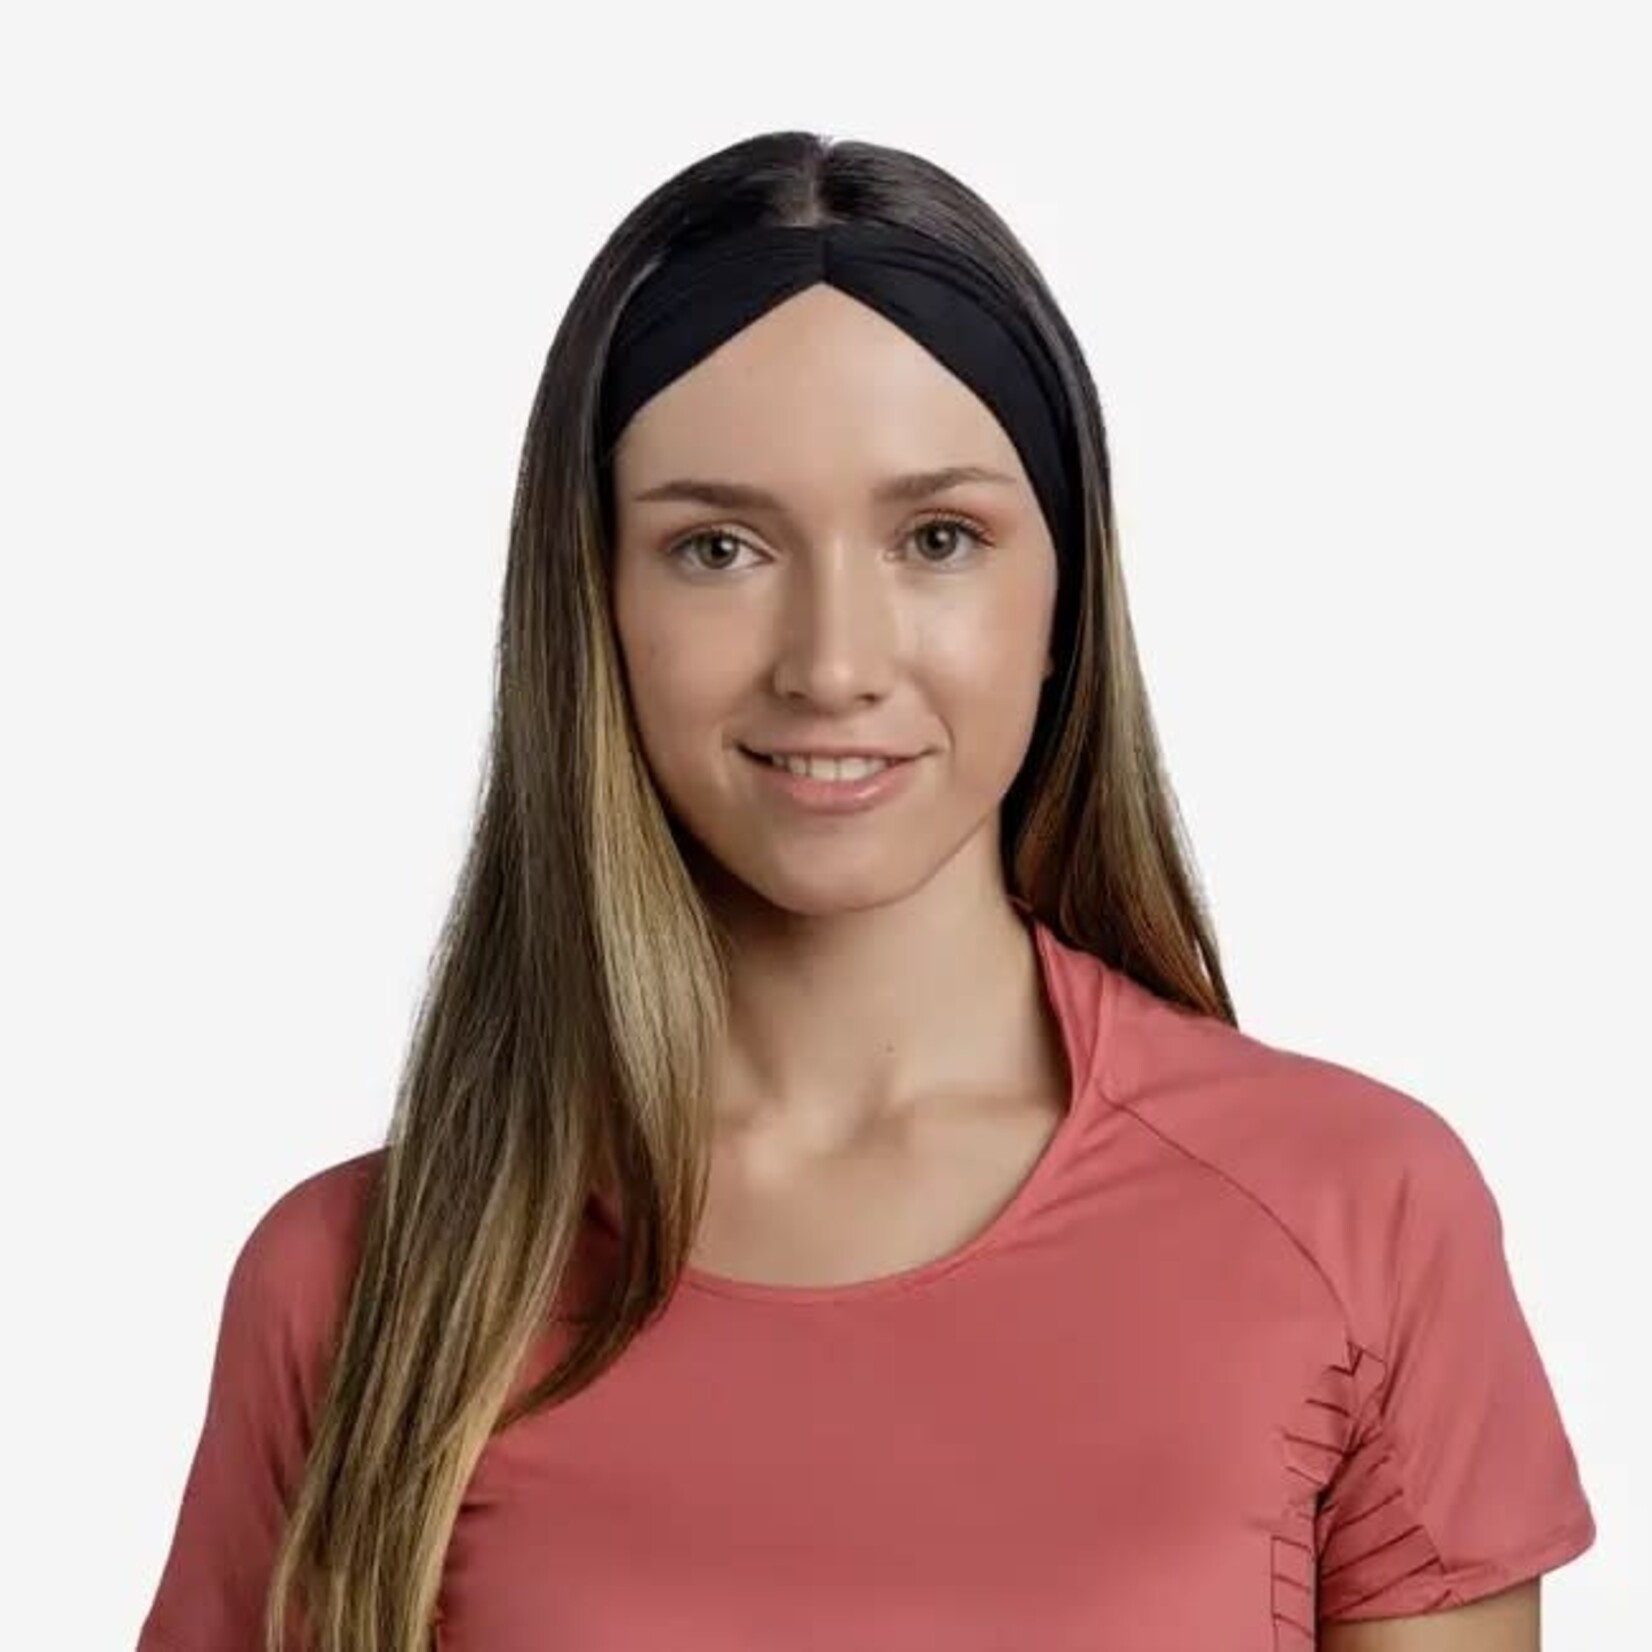 Buff Bandeau Coolnet UV Ellipse Headband Solid Black Adult